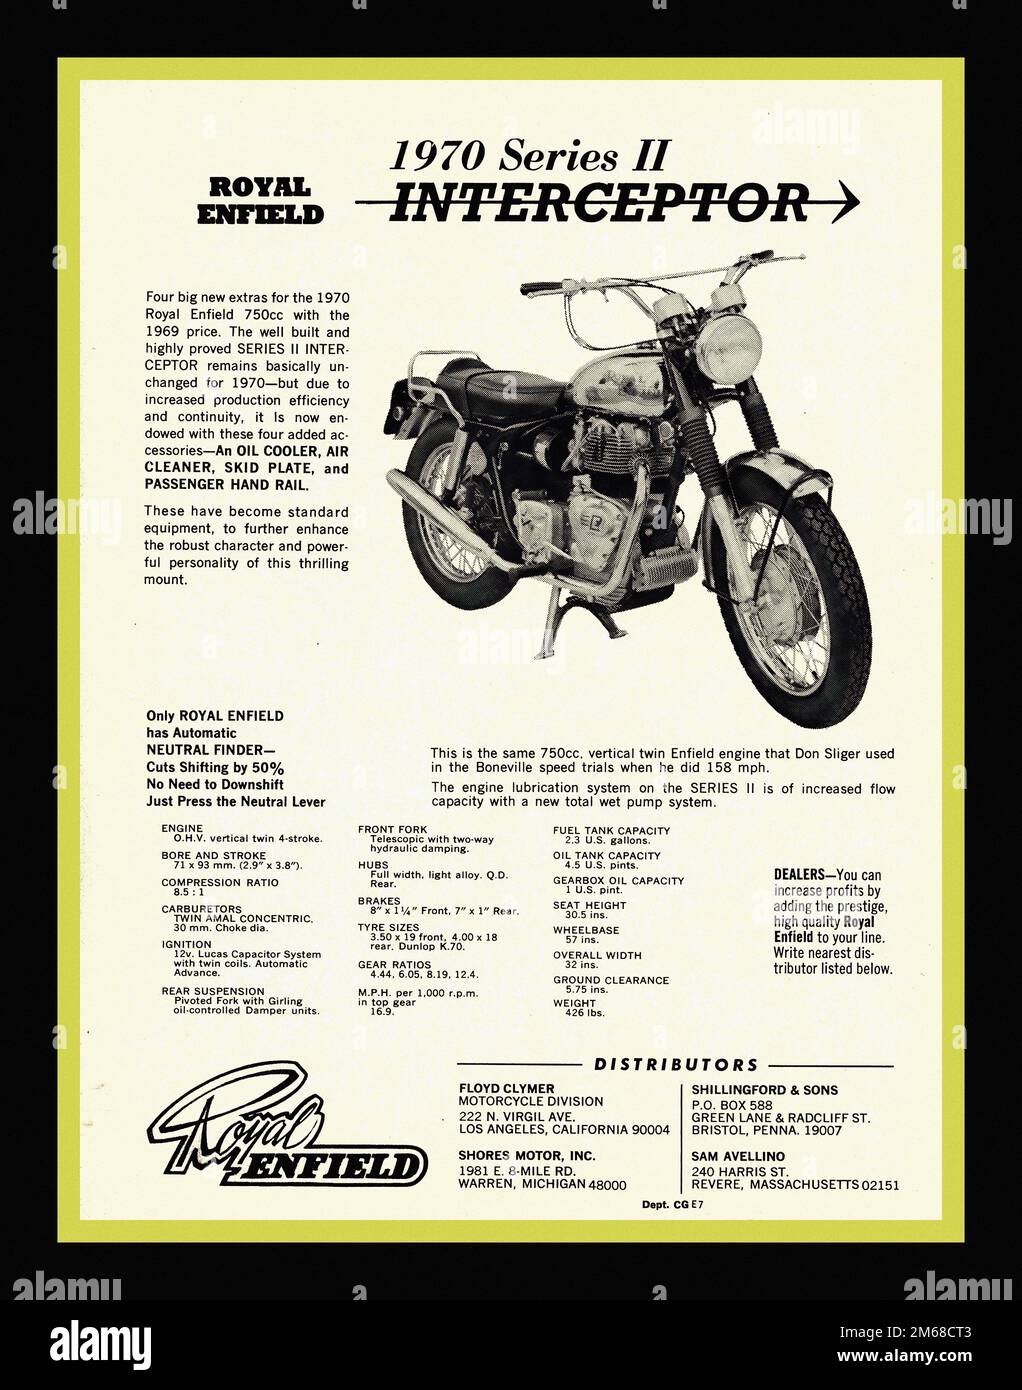 Royal Enfield Interceptor 750 cc 1970 - Publicité de moto d'époque Banque D'Images